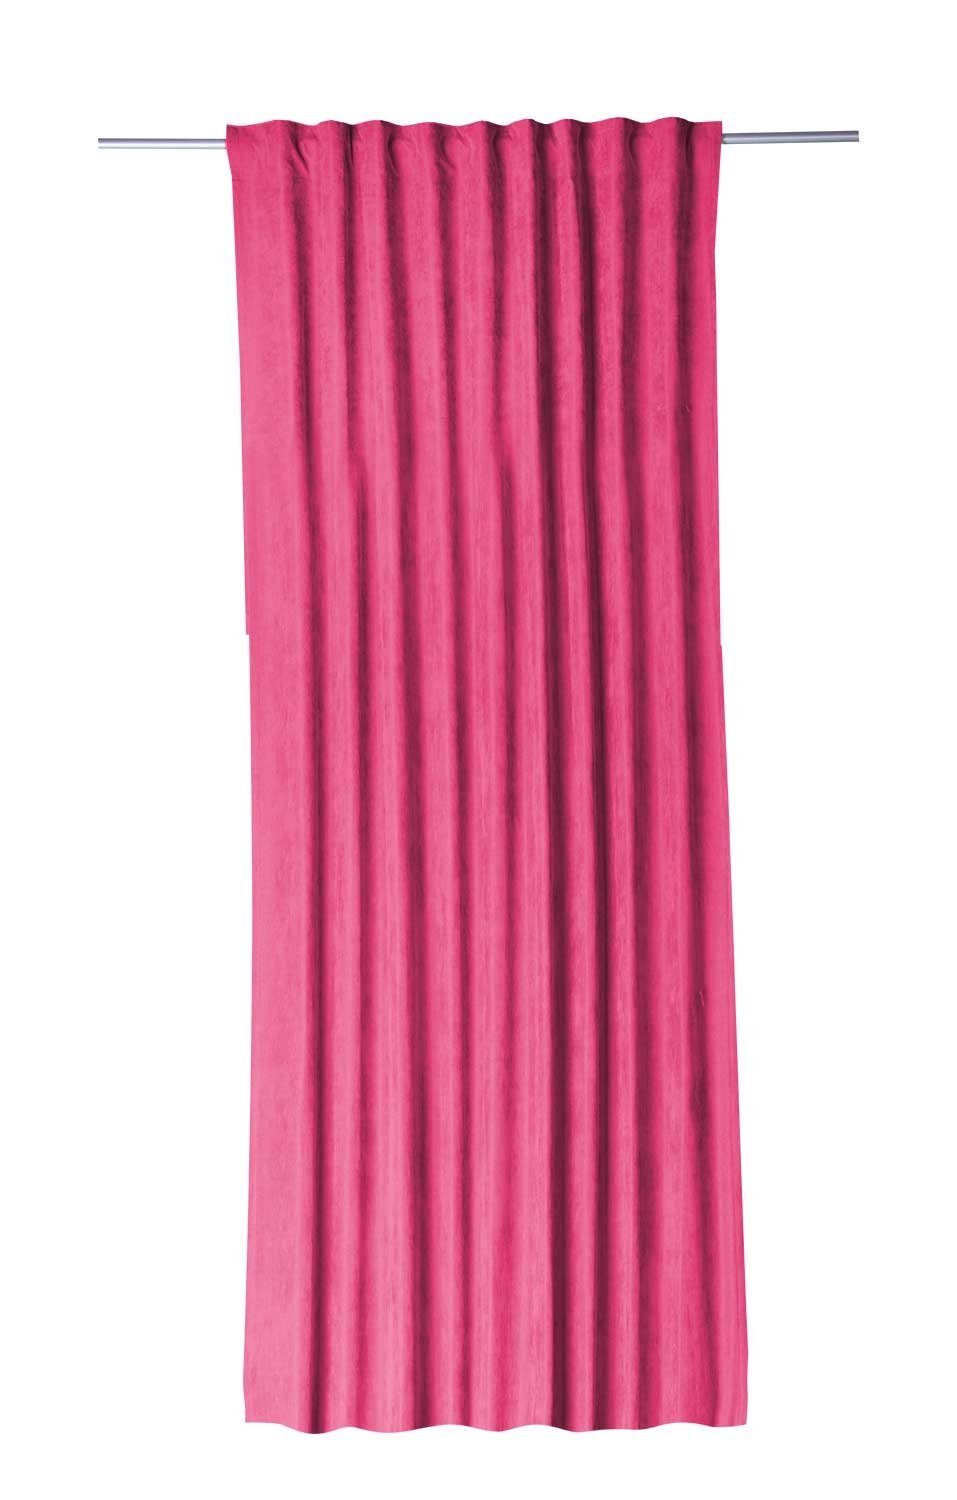 Vorhang Schlaufenvorhang, Rosa, B 135 cm, L 245 cm, Gözze, verdeckte Schlaufen, halbtransparent